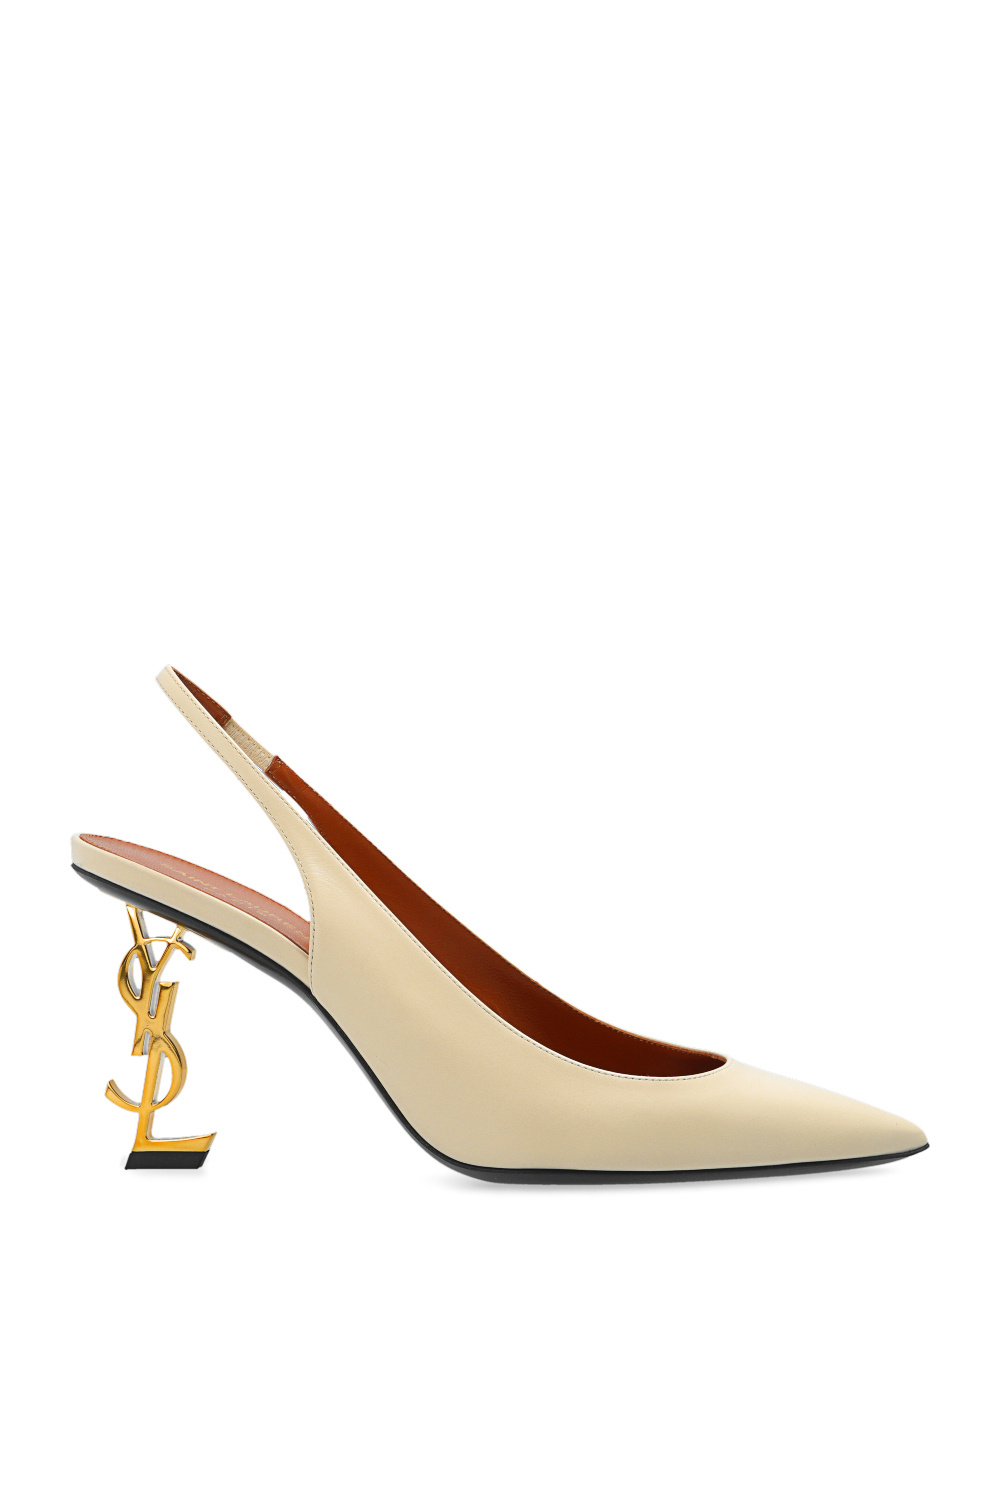 Saint Laurent 'Opyum' pumps | Women's Shoes | Vitkac